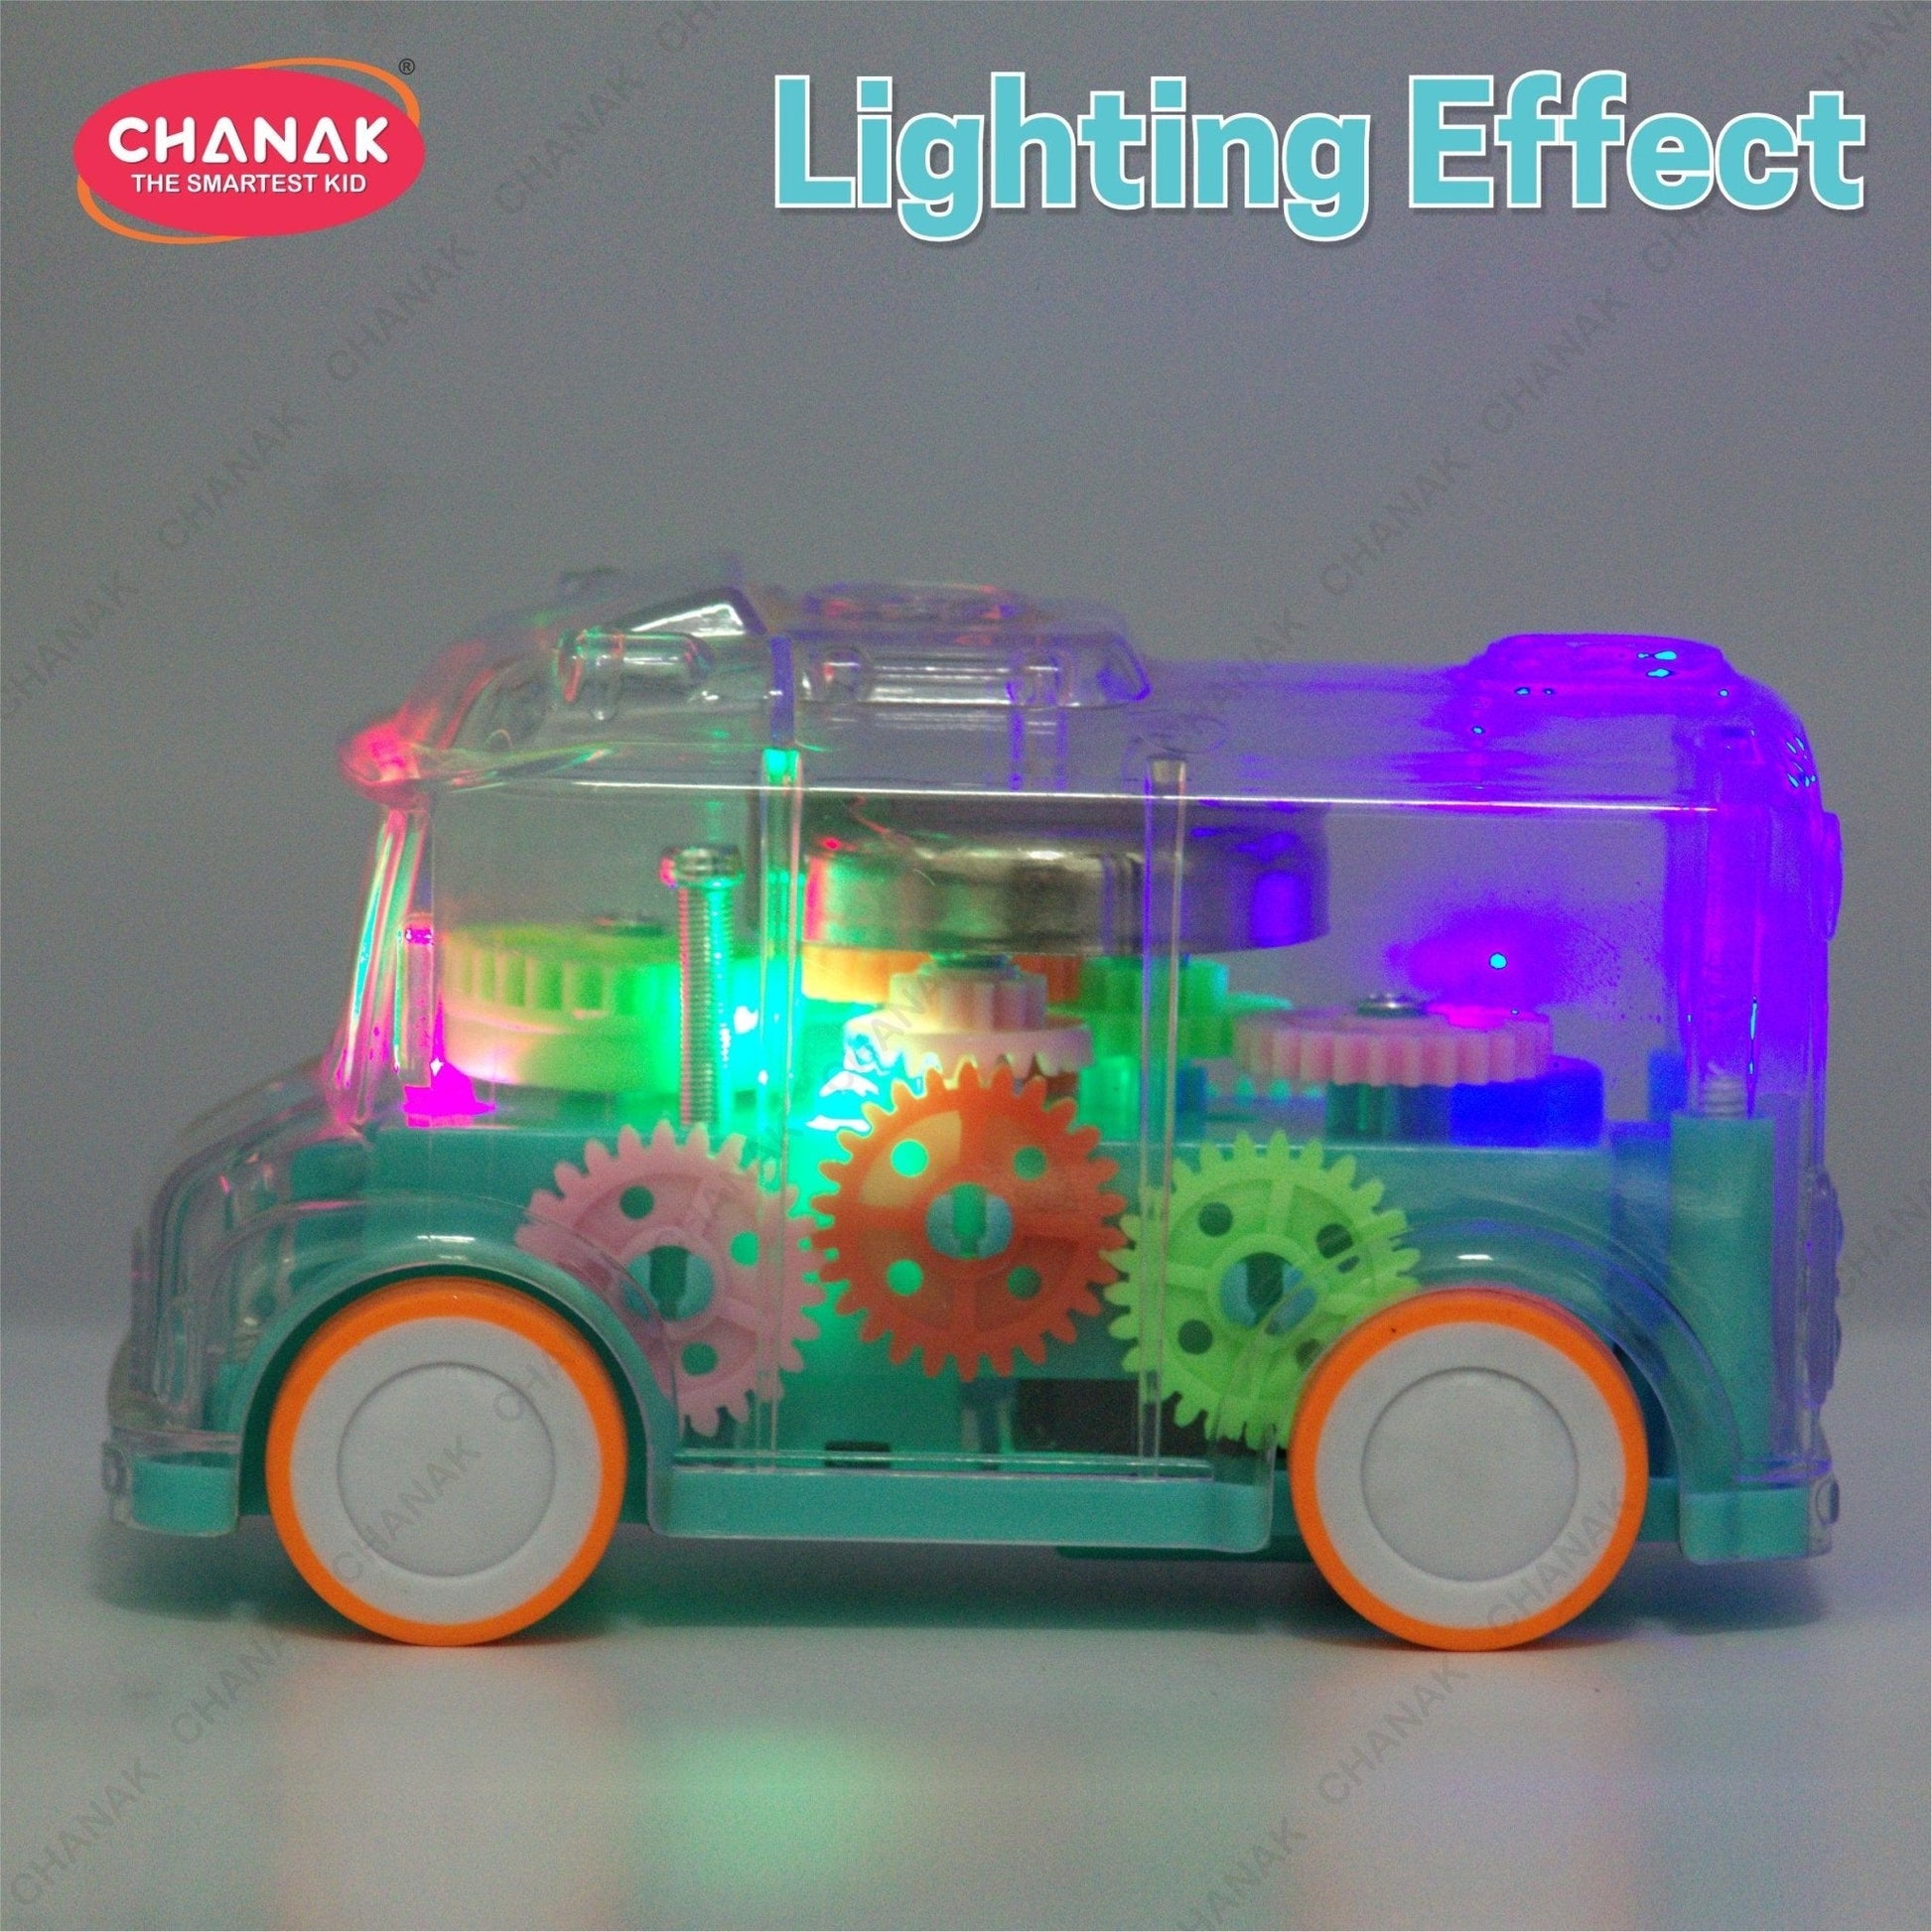 Chanak Transparent Gear Bus for Kids (Light Blue) - chanak